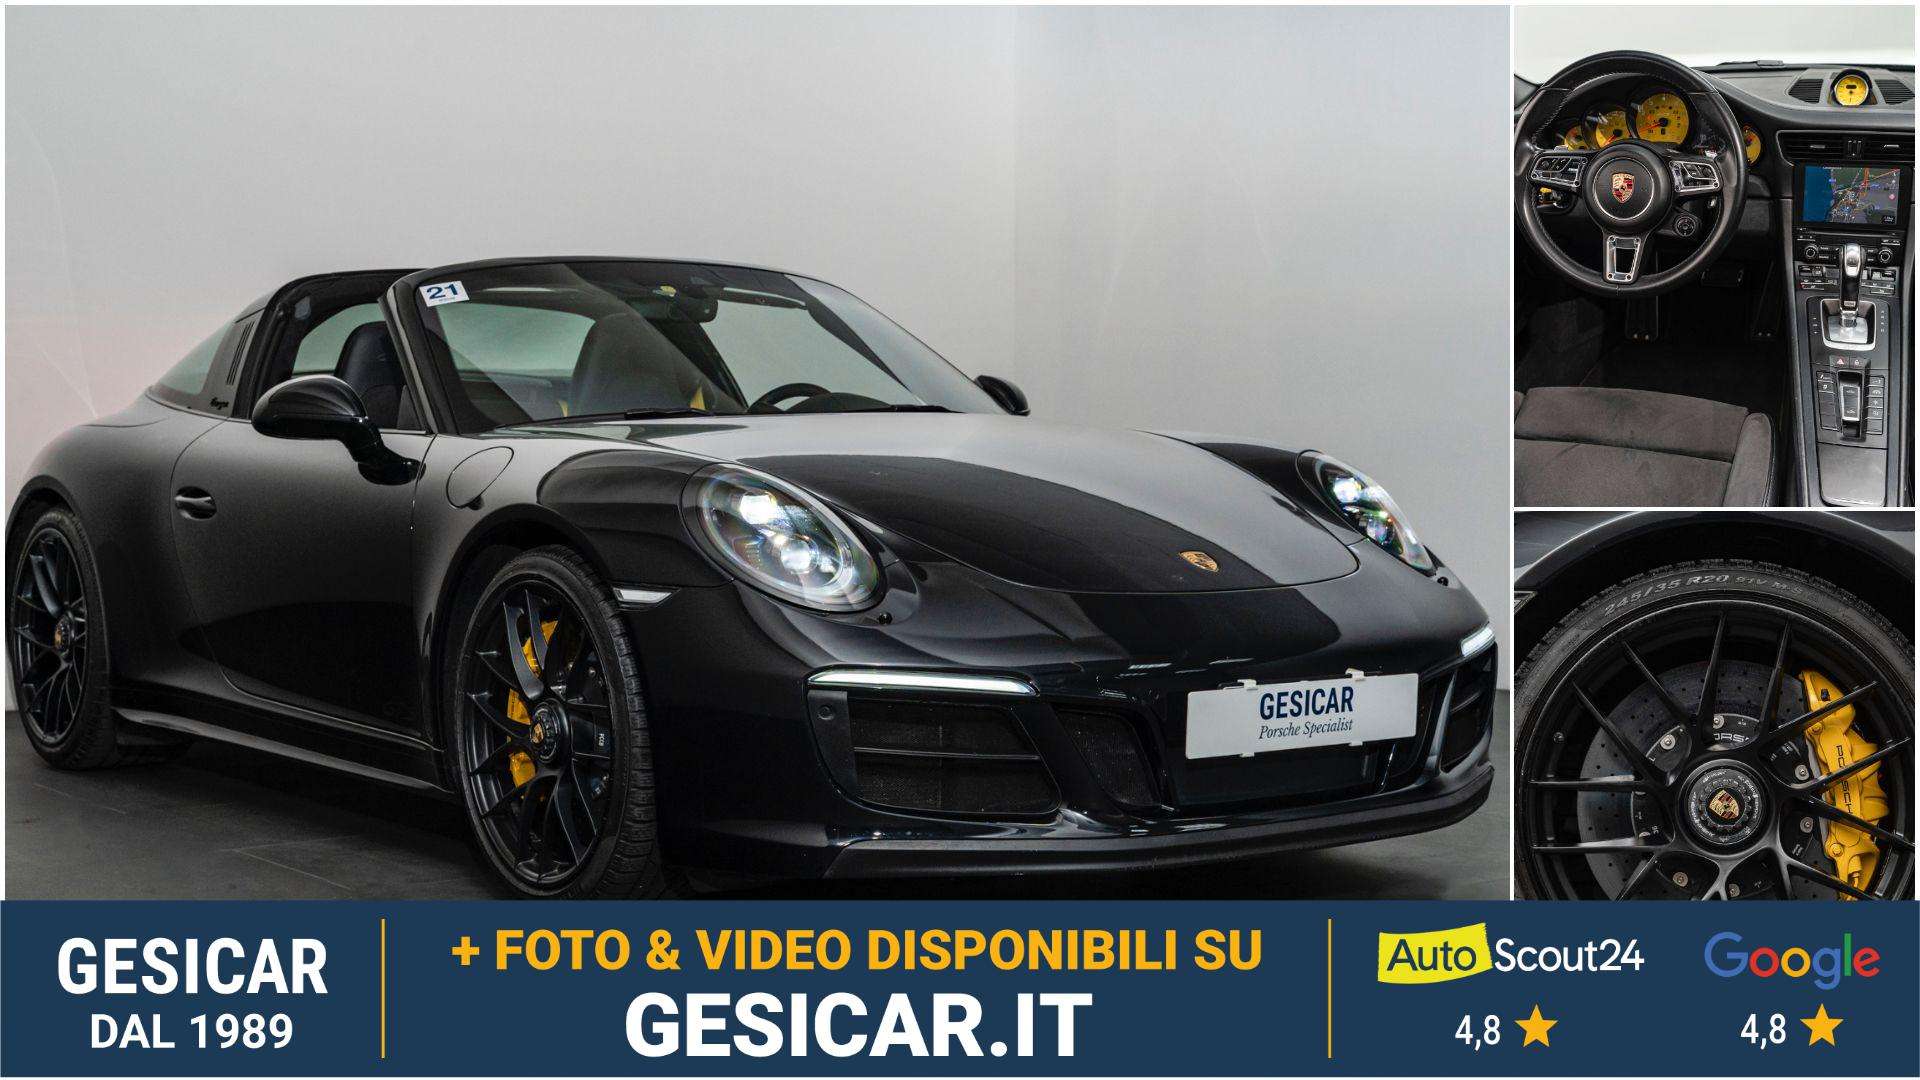 Porsche 991 Convertible in Black used in Livorno - Li for € 128,500.-